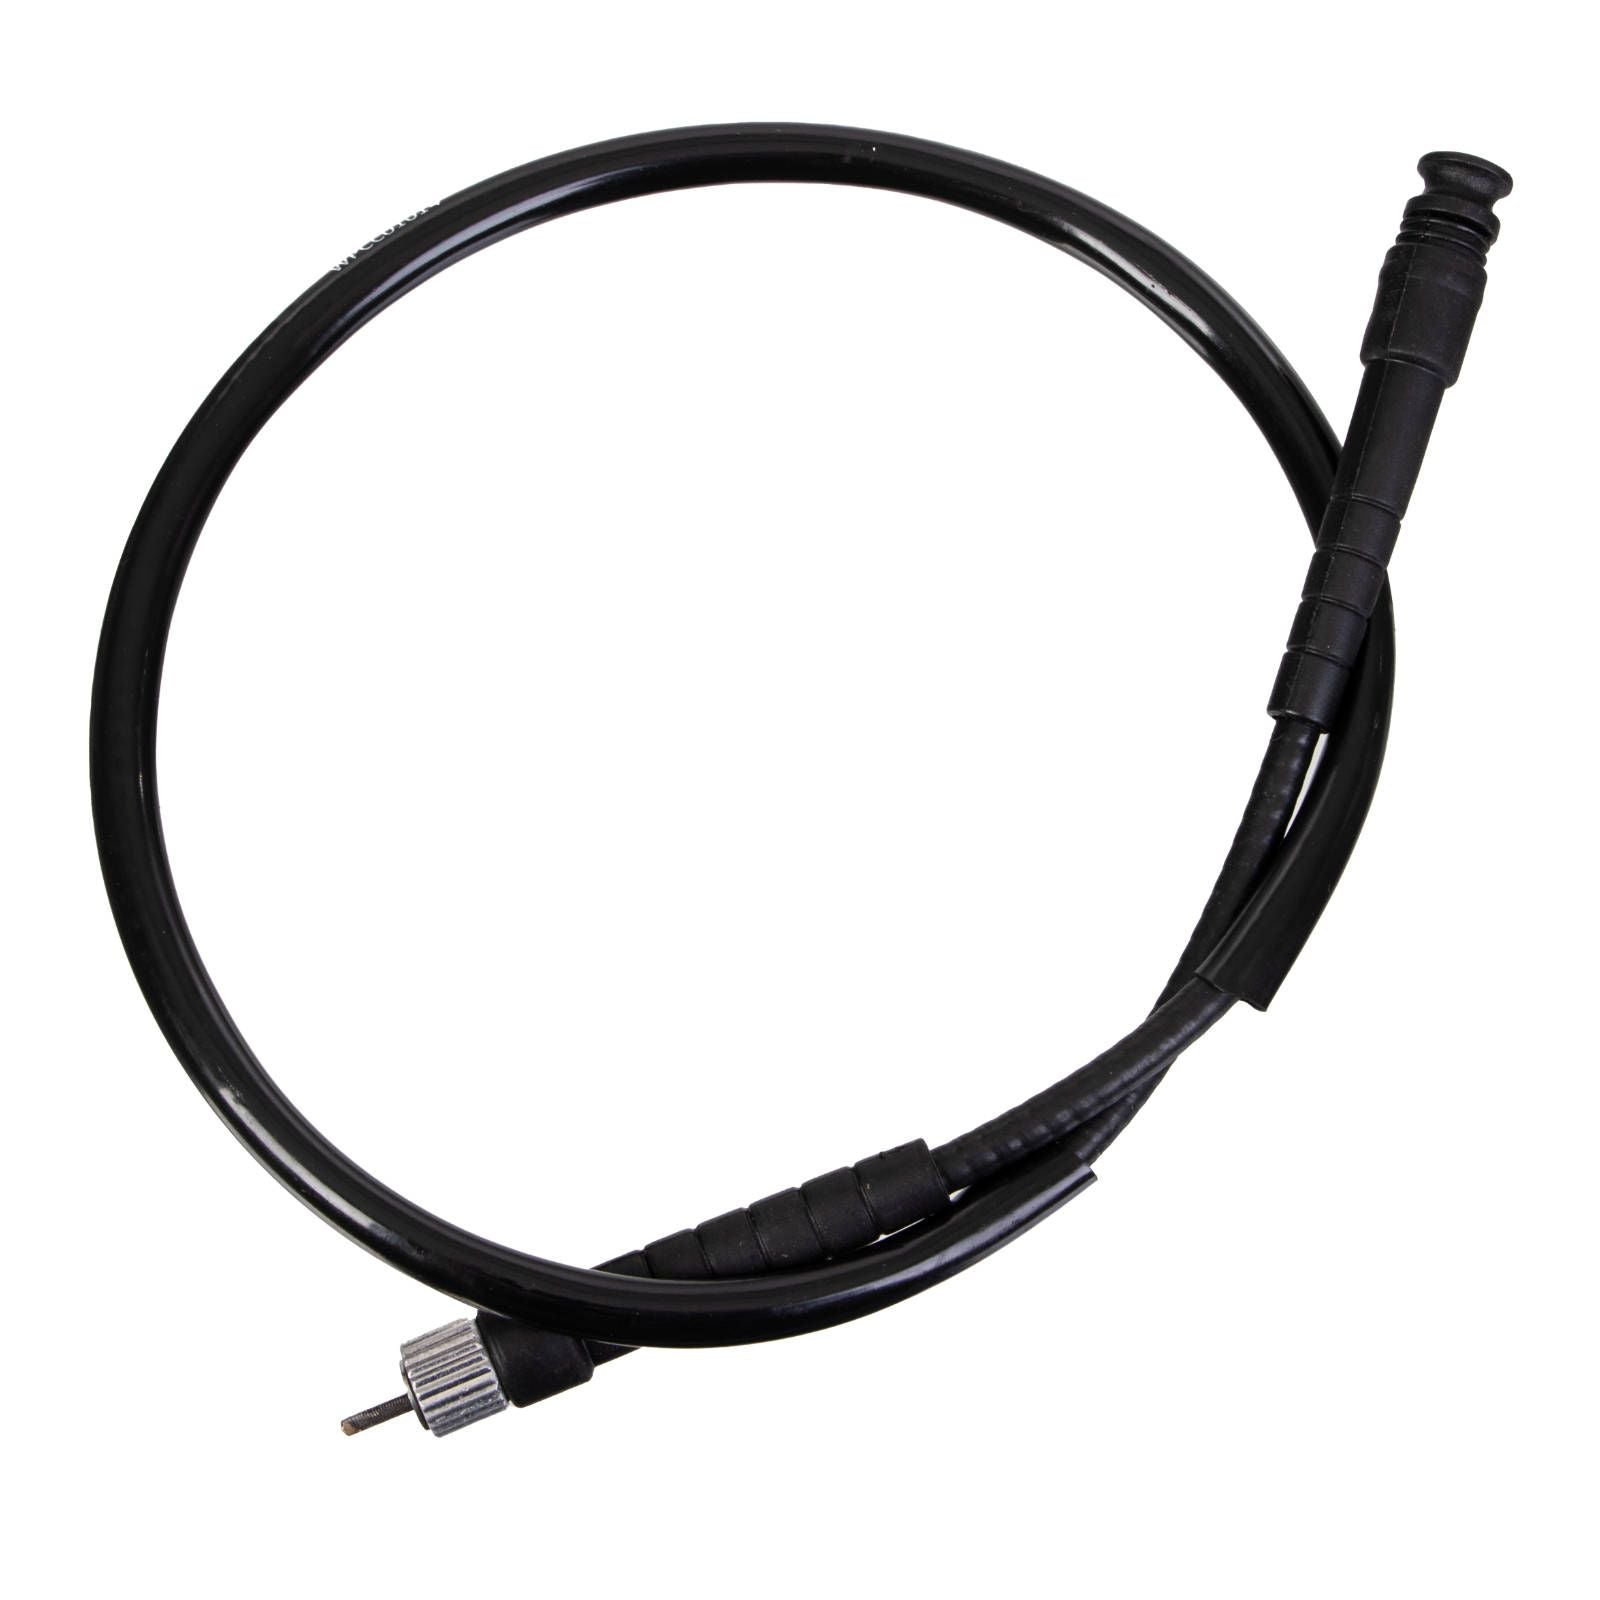 New WHITES Speedo Cable For Honda NXR125 #WPCC01014